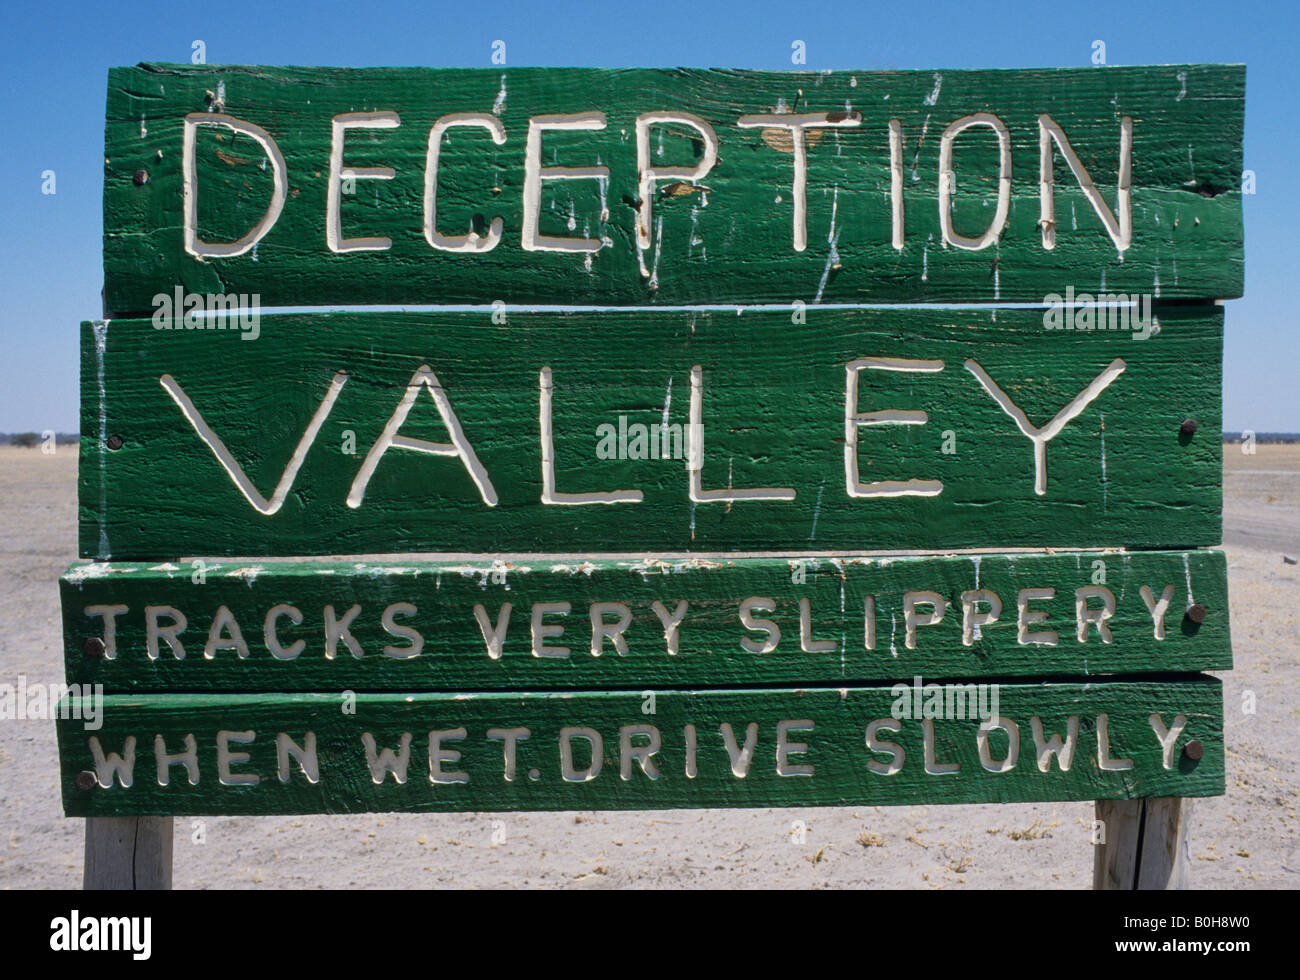 Zeichen: "Deception Valley", Central Kalahari Game Reserve, Botswana, Afrika Stockfoto